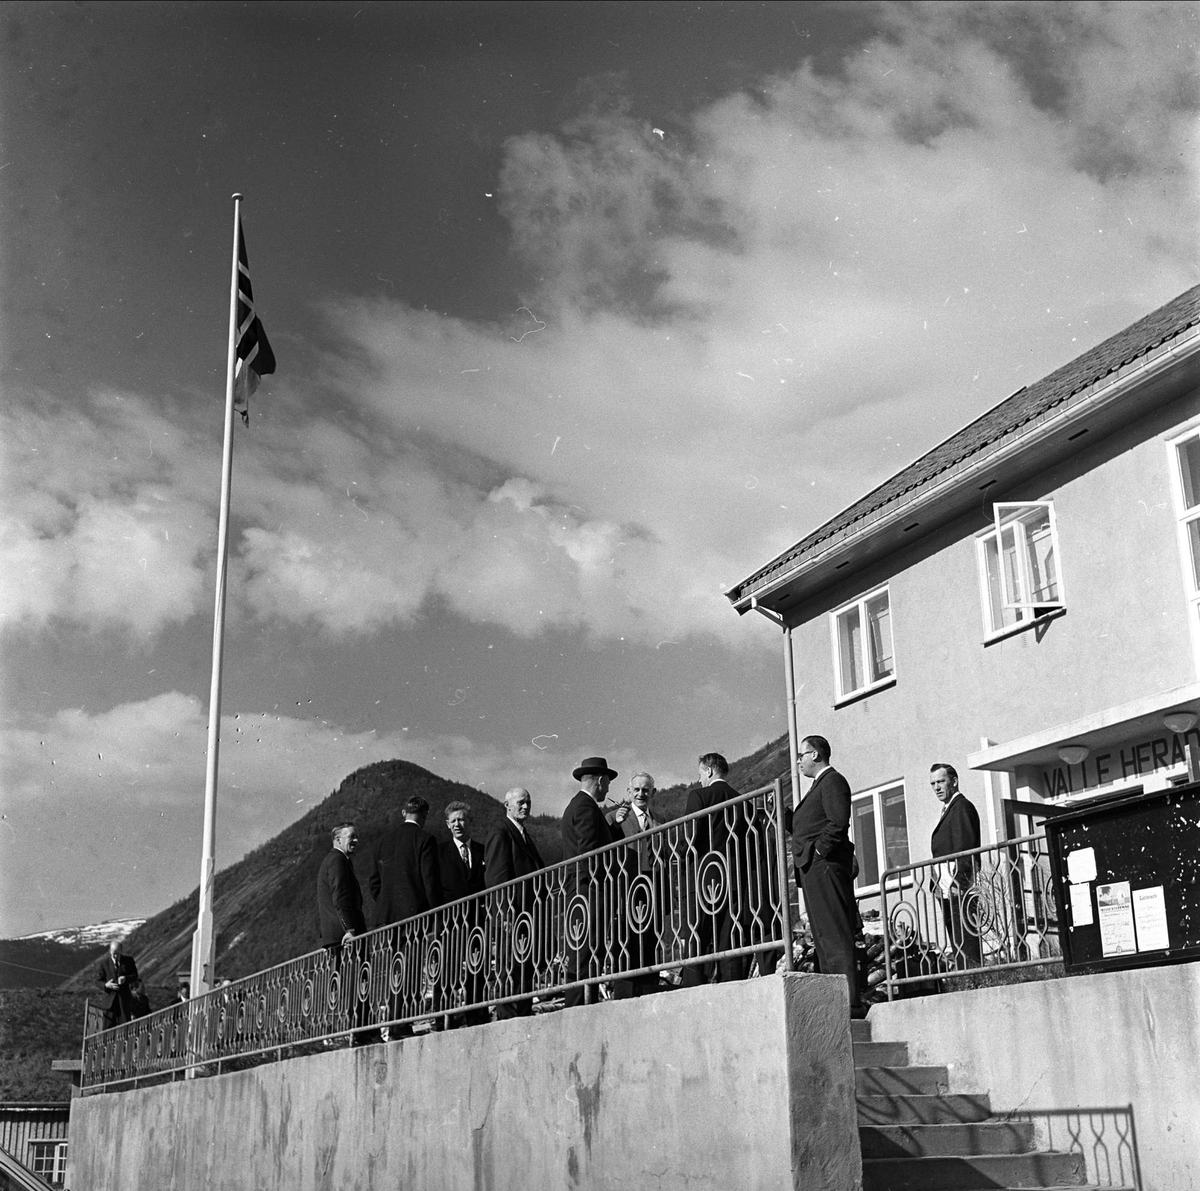 Valle, Aust-Agder, 30.05.1963. Dresskledde menn foran bygning.